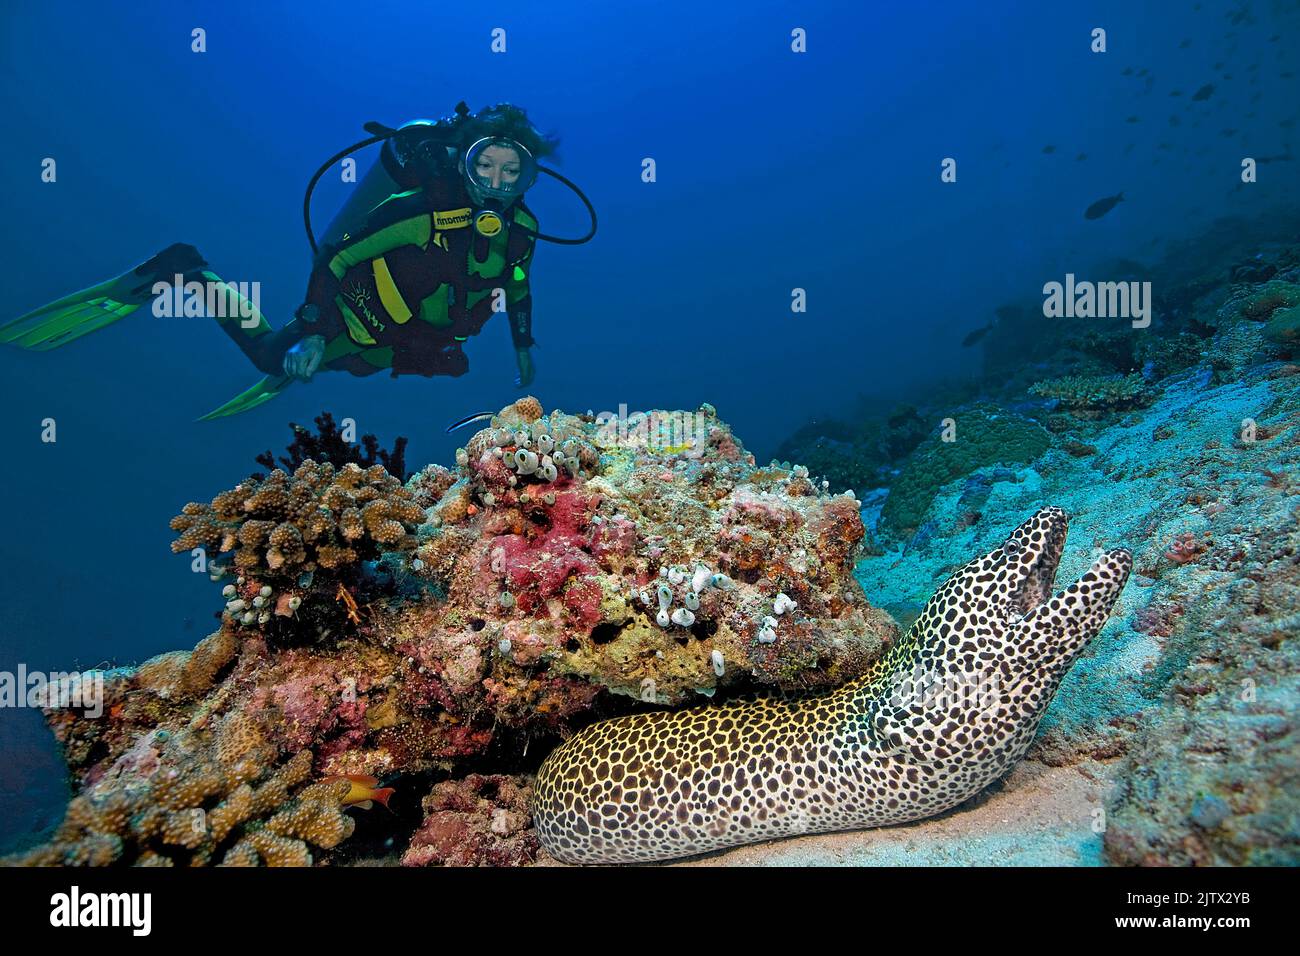 Plongée plongeur regarde un Honeycomb moray, (Gymnothorax favagineus) dans un récif de corail, Maldives, océan Indien, Asie Banque D'Images